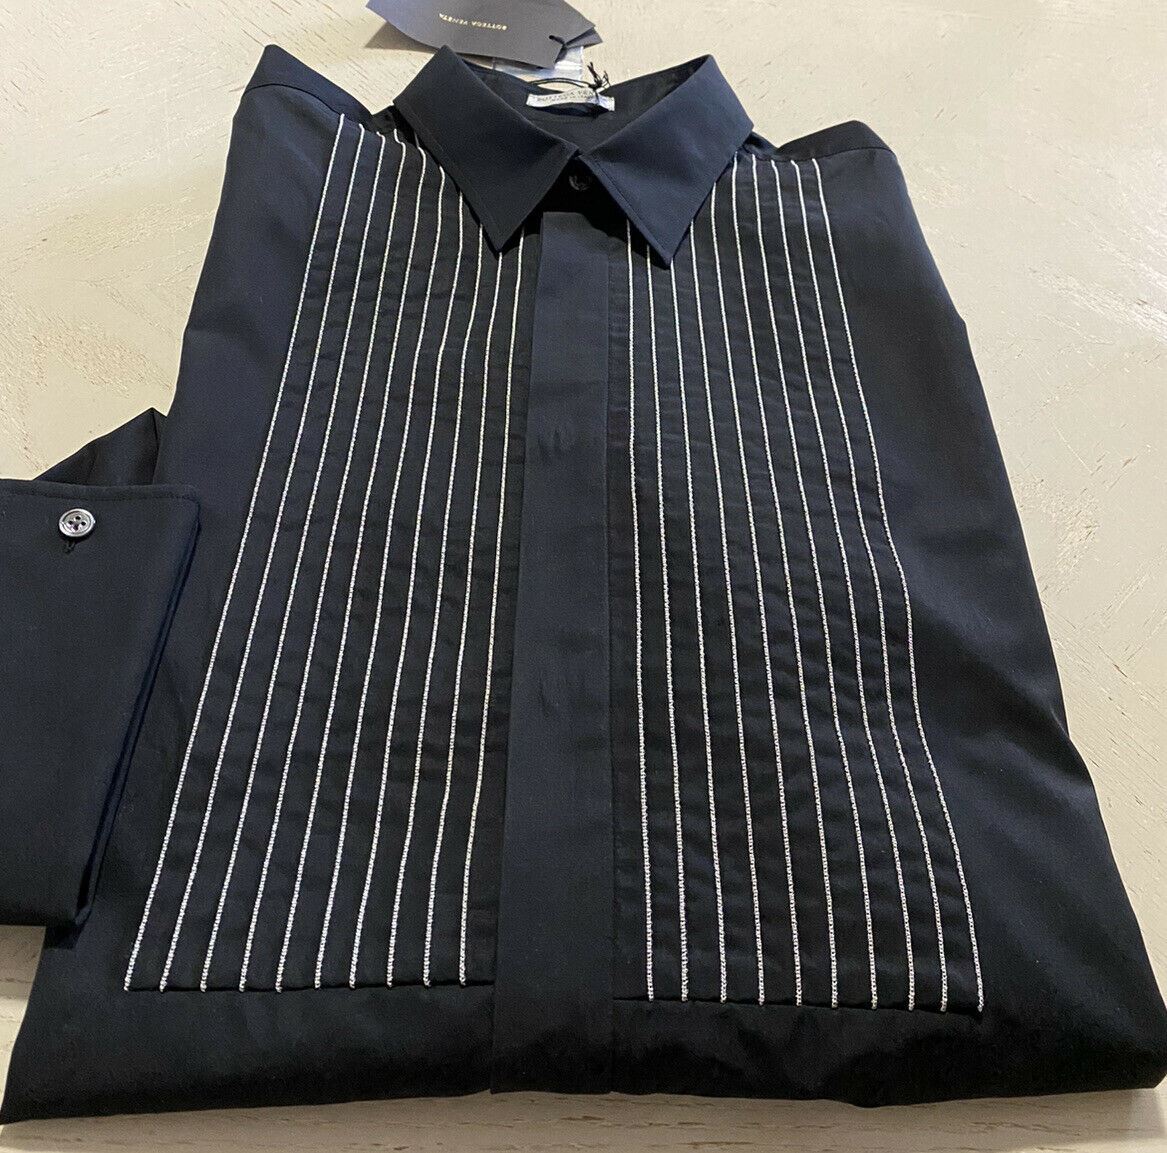 NWT $1300 Bottega Veneta Mens Dress Shirt Blak 44/17.5 Italy